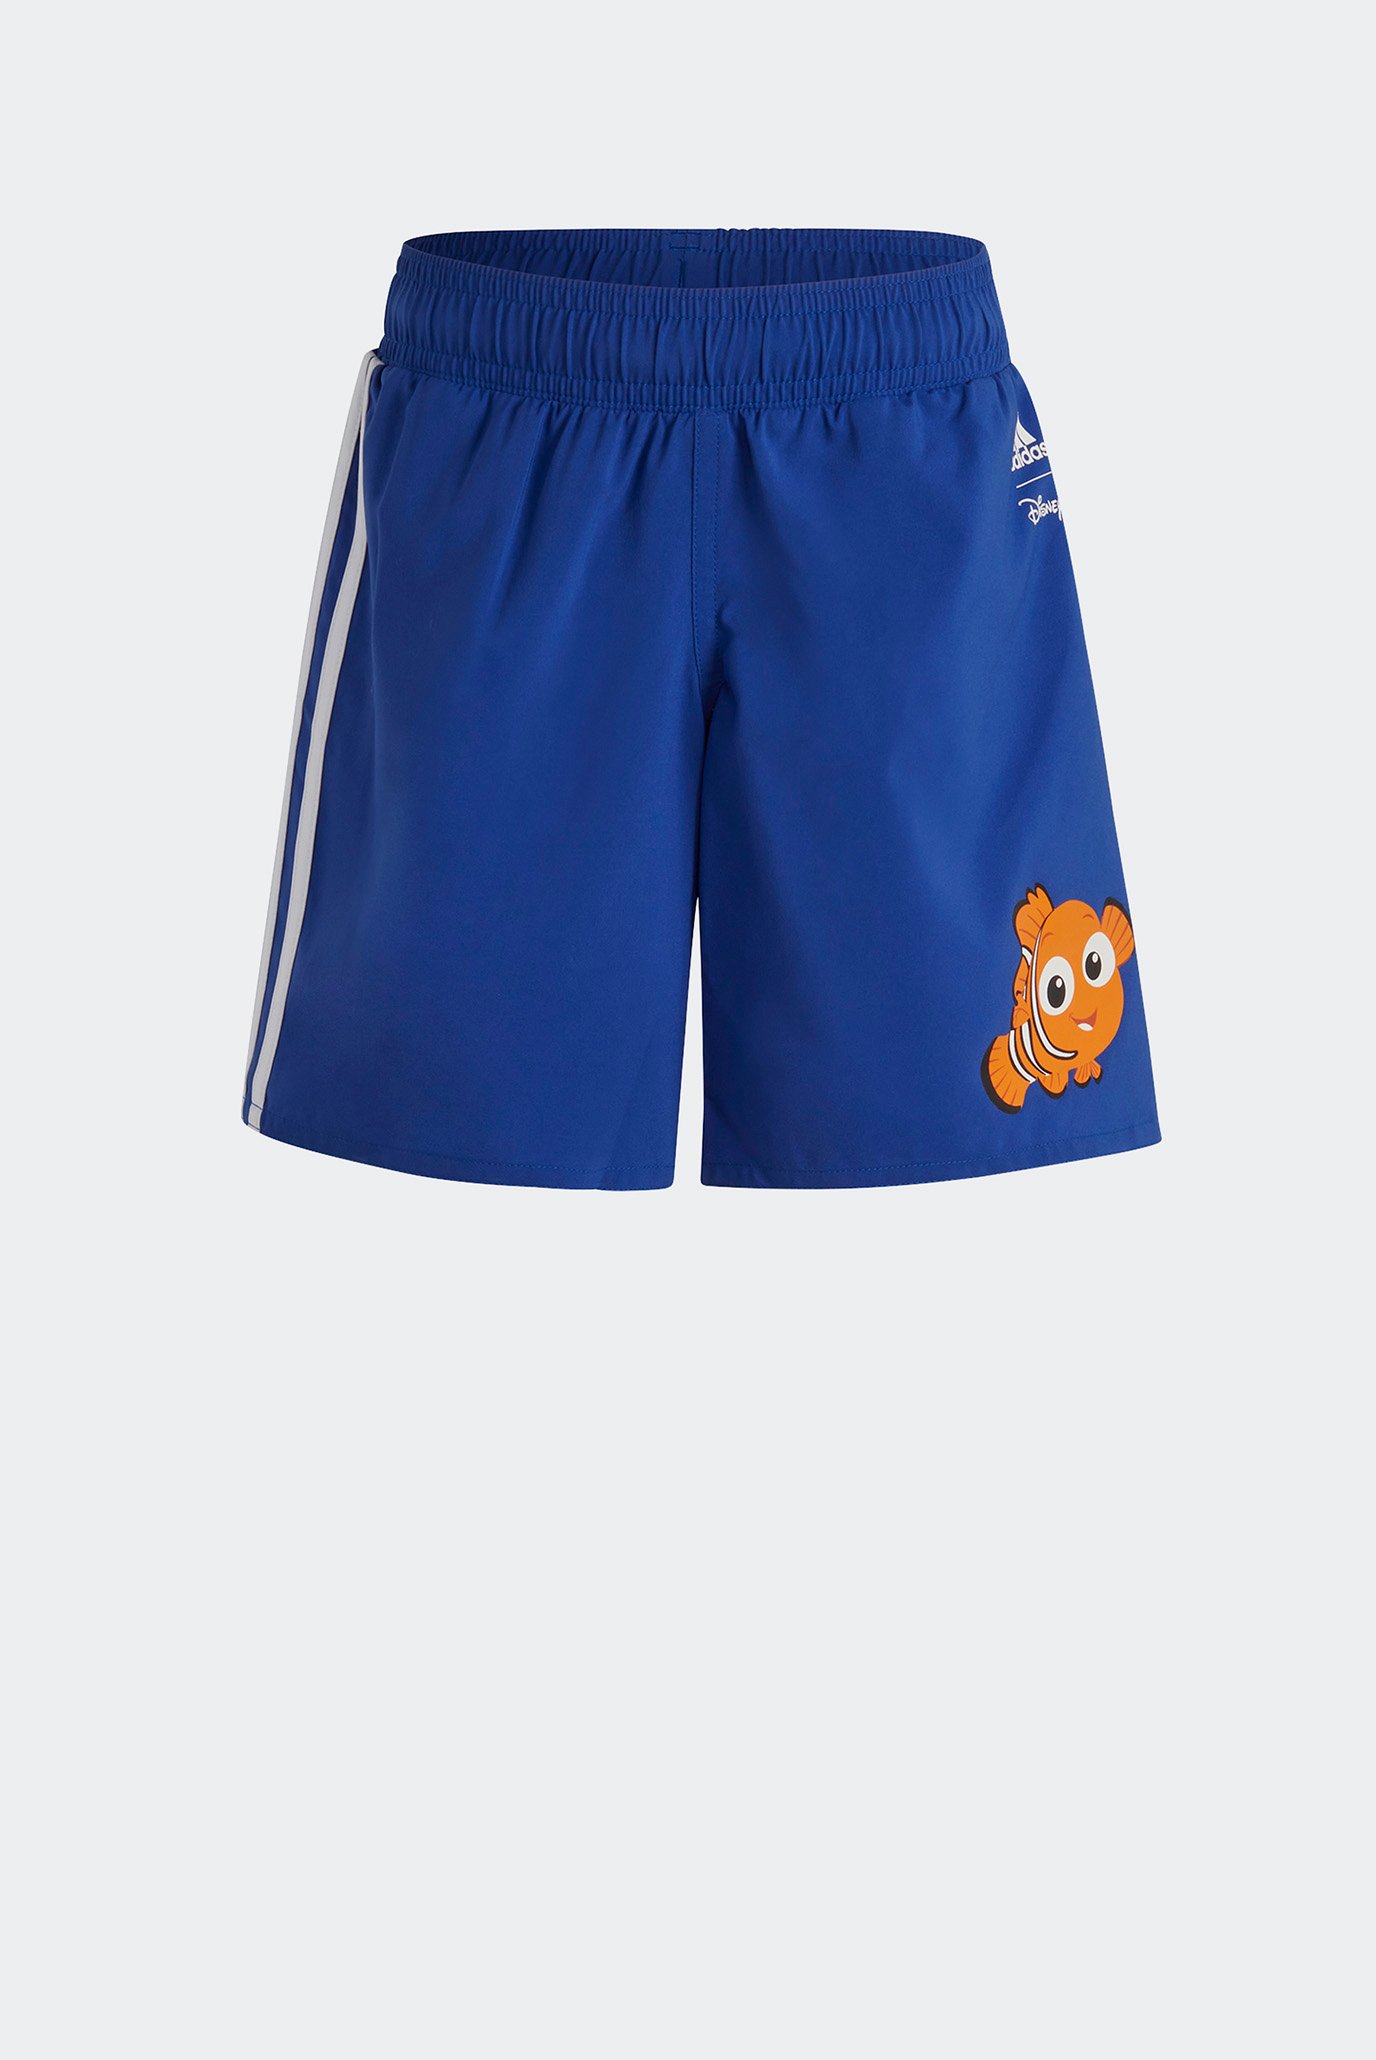 Детские синие шорты для плавания Finding Nemo 1